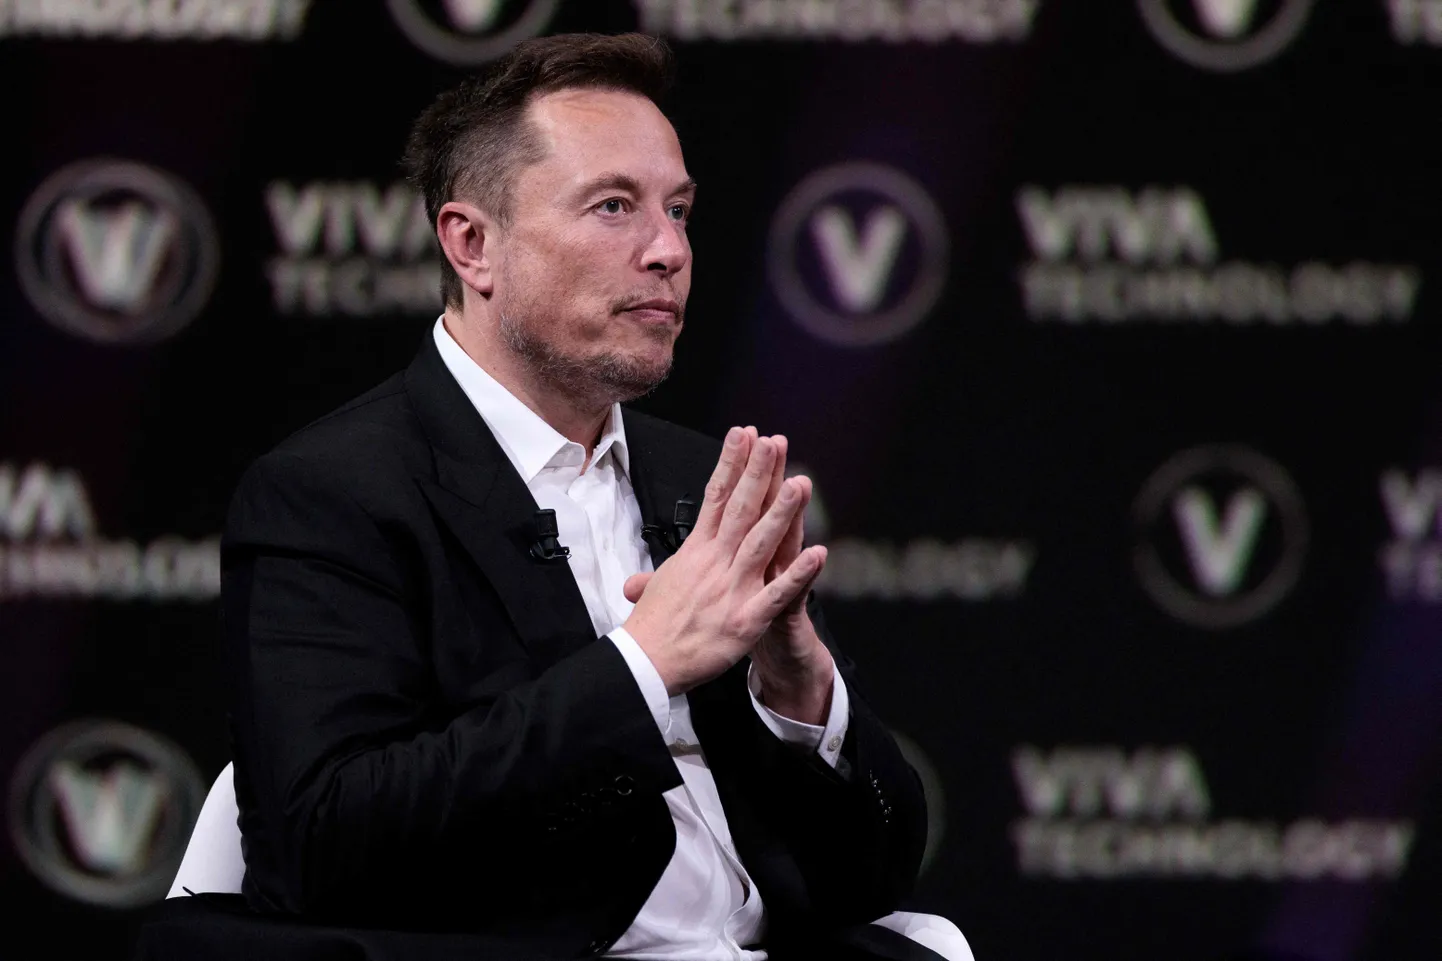 Kas vastus on 42? Miljardär Elon Musk hakkab uue tehisintellekti idufirmaga otsima vastuseid küsimustele, kuidas maailmakõiksus on üles ehitatud